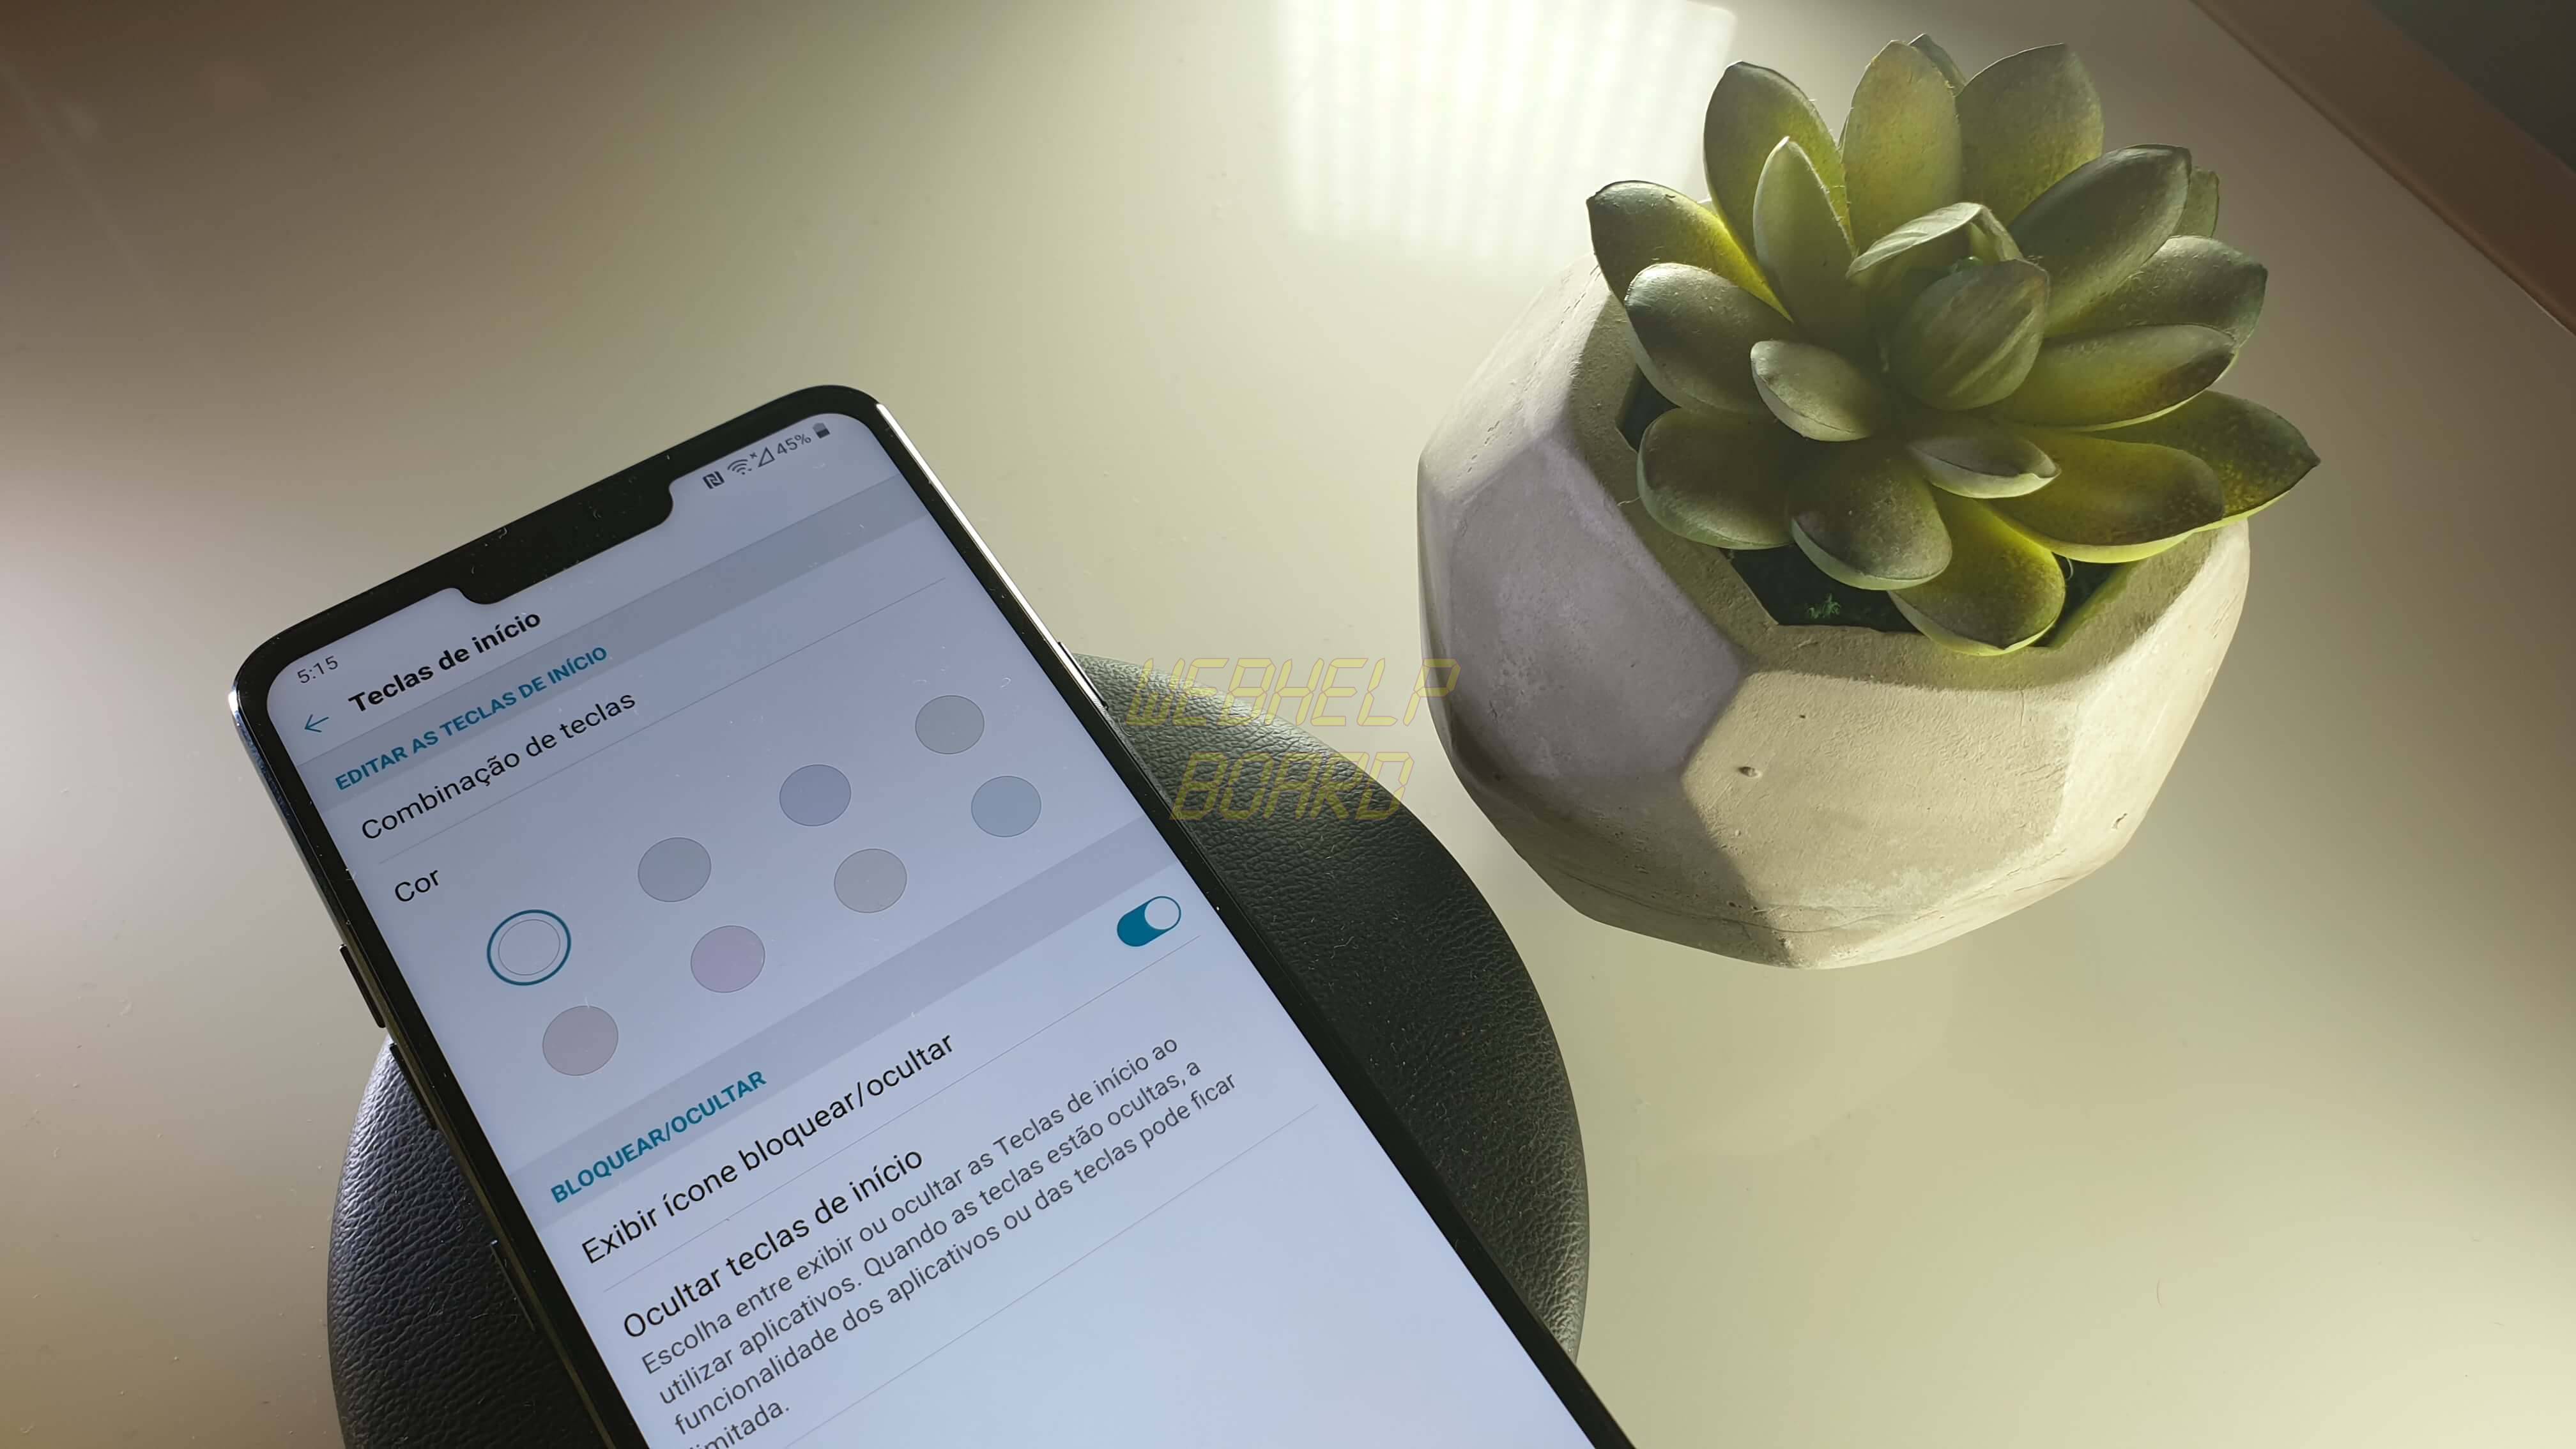 20181130 171521 - LG G7 ThinQ: dicas e truques para aproveitar ao máximo o smartphone